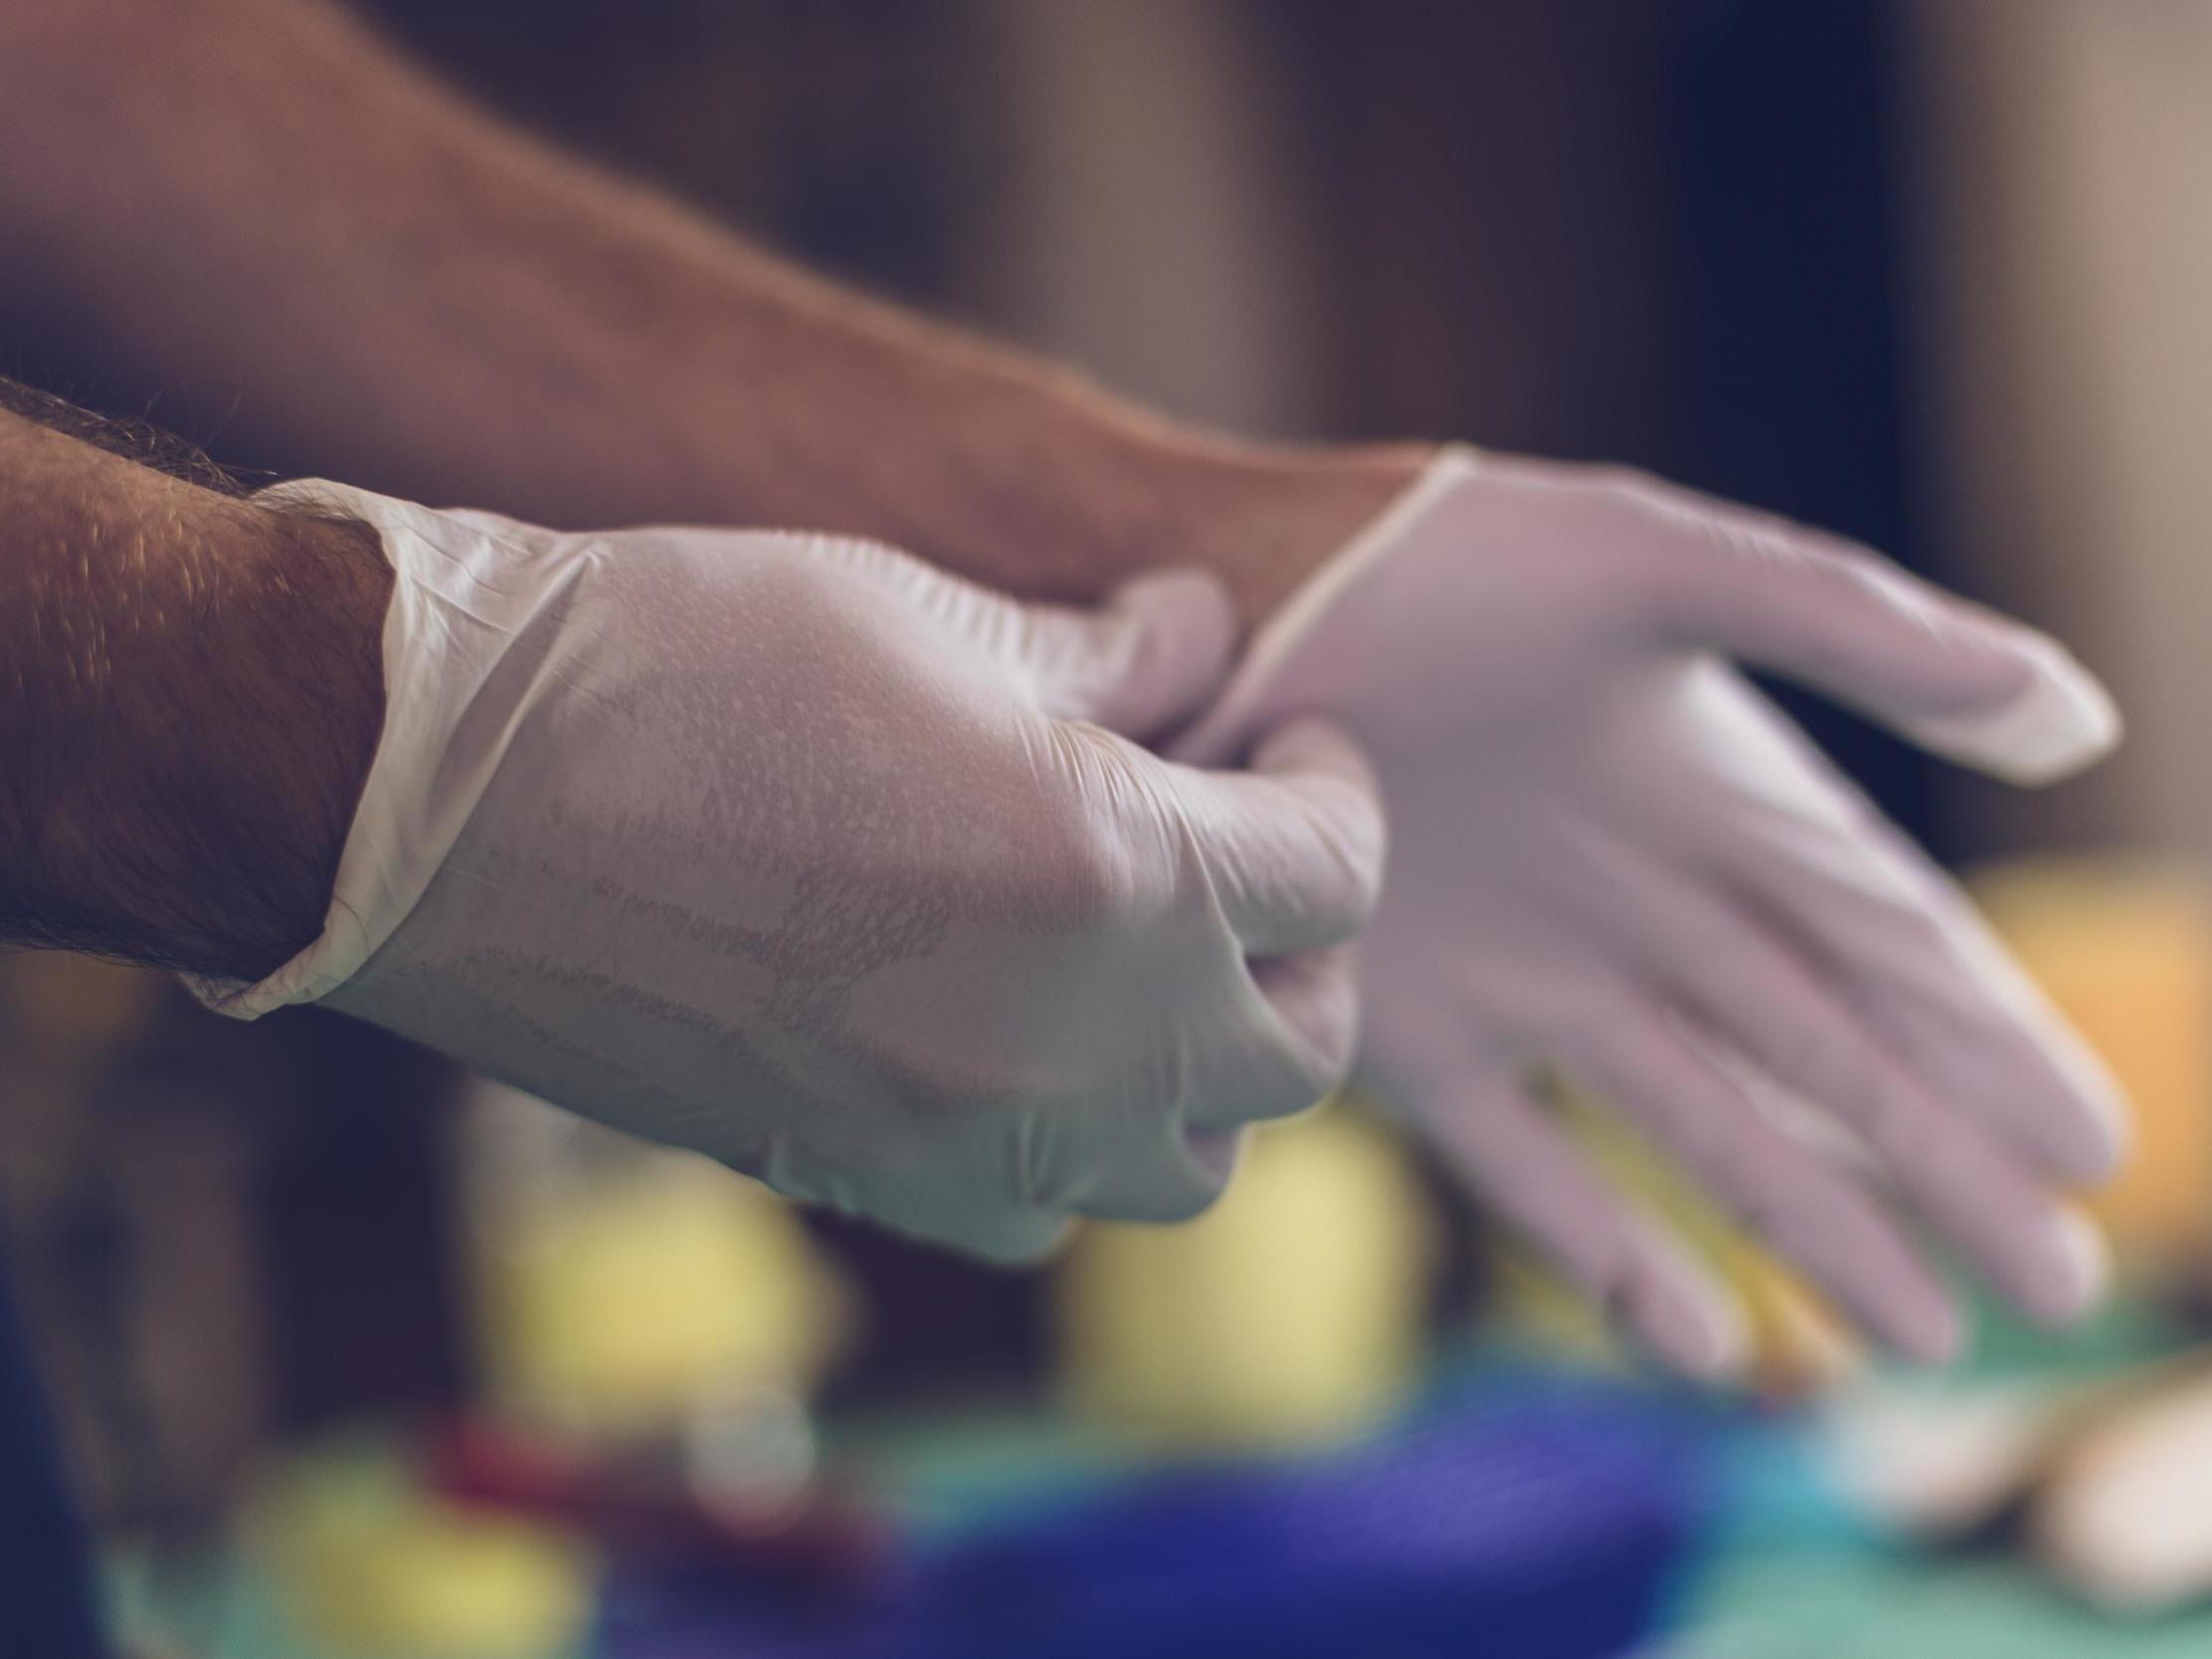 Резиновые перчатки во время пандемии: спасение или рассадник инфекции?